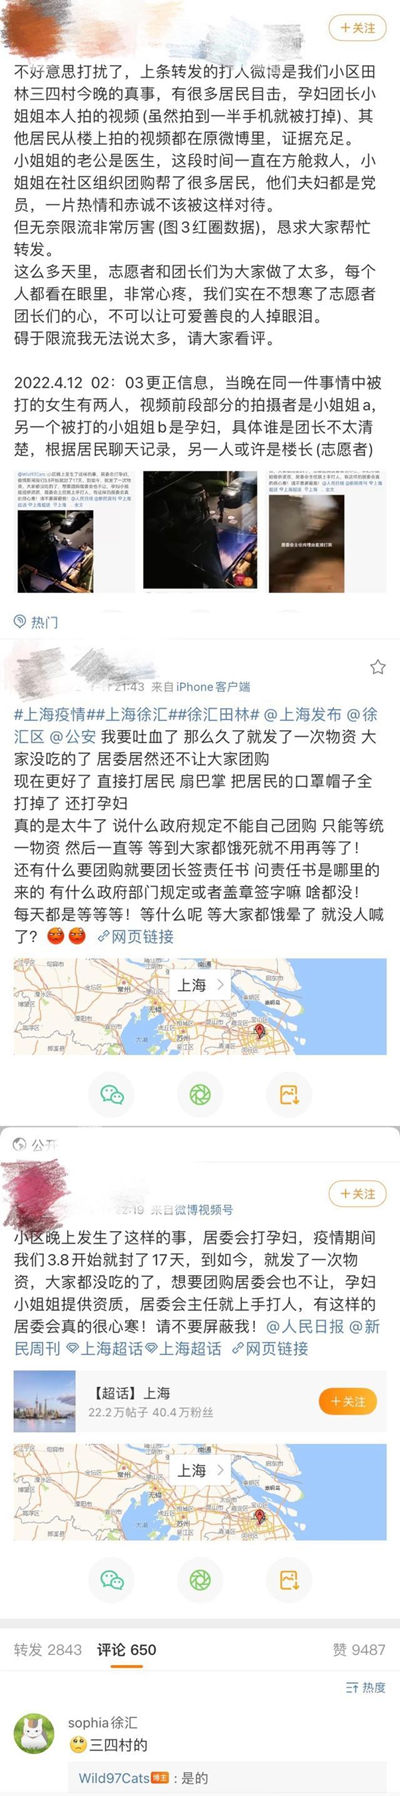 居委会殴打两女子怎么回事 上海小区居民回应